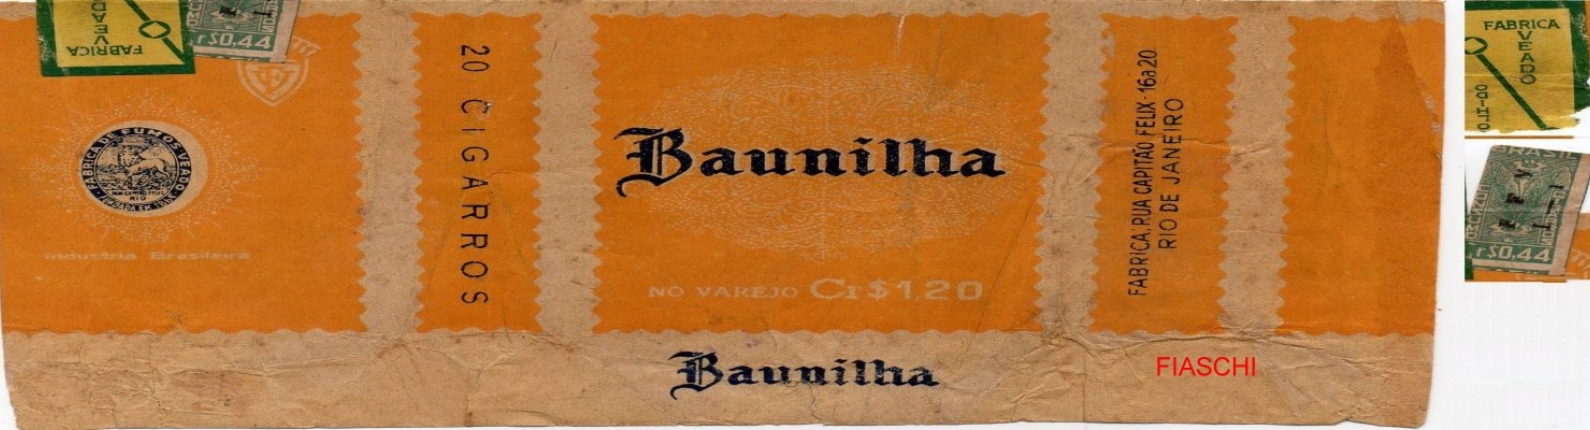 BAUNILHA